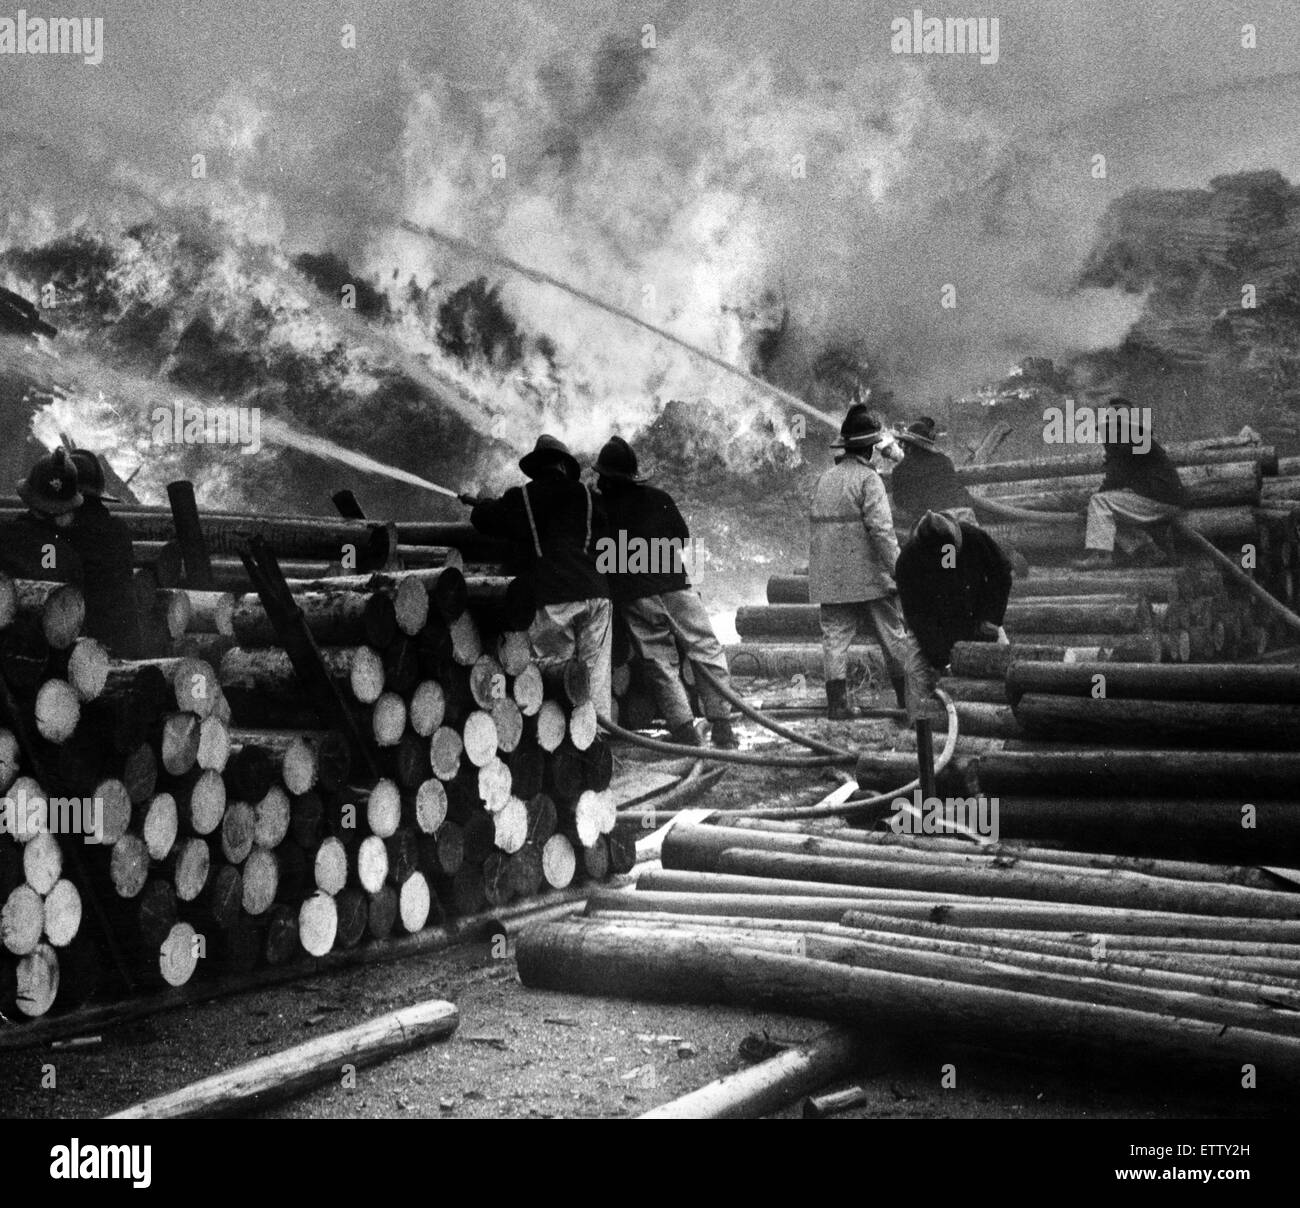 Incendie au parc de séchage, détruisant 50 000 accessoires pit, parc de séchage Fenwick, Seaton Carew, Hartlepool, 8 mai 1972. Banque D'Images